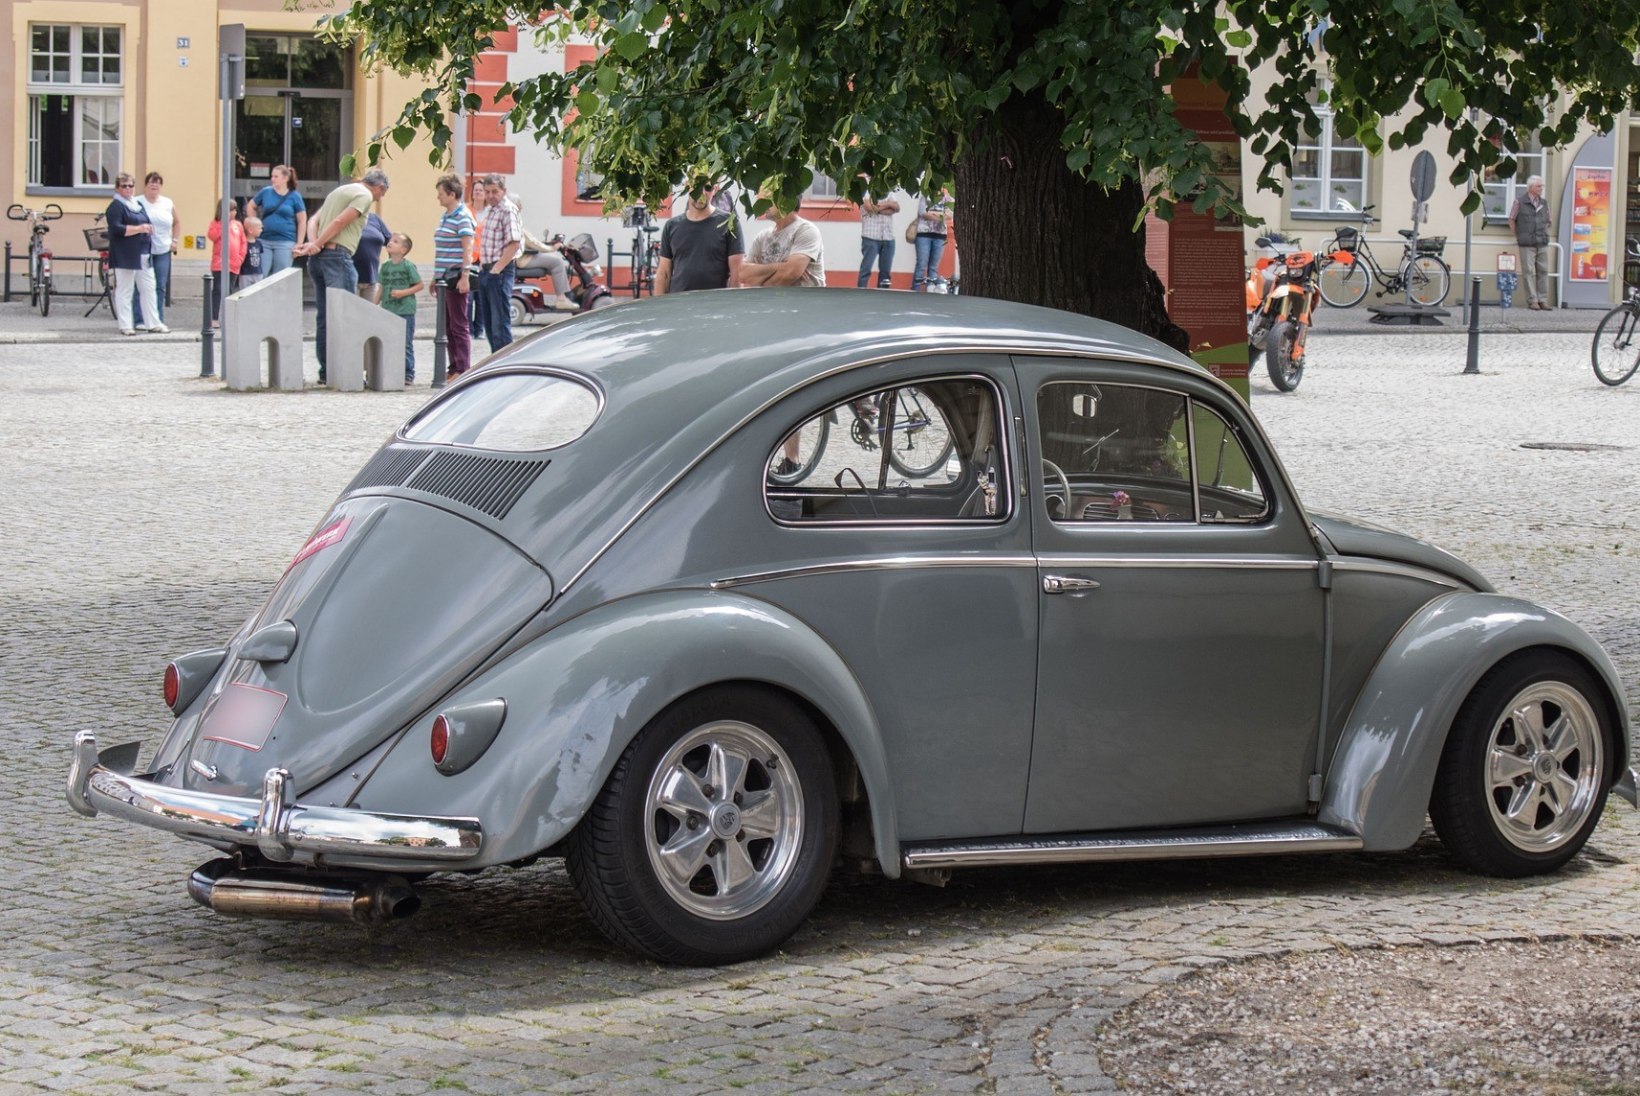 GALERII | PÕRNIKAS ON SURNUD, ELAGU PÕRNIKAS: Volkswagen Beetle läheb ajalukku